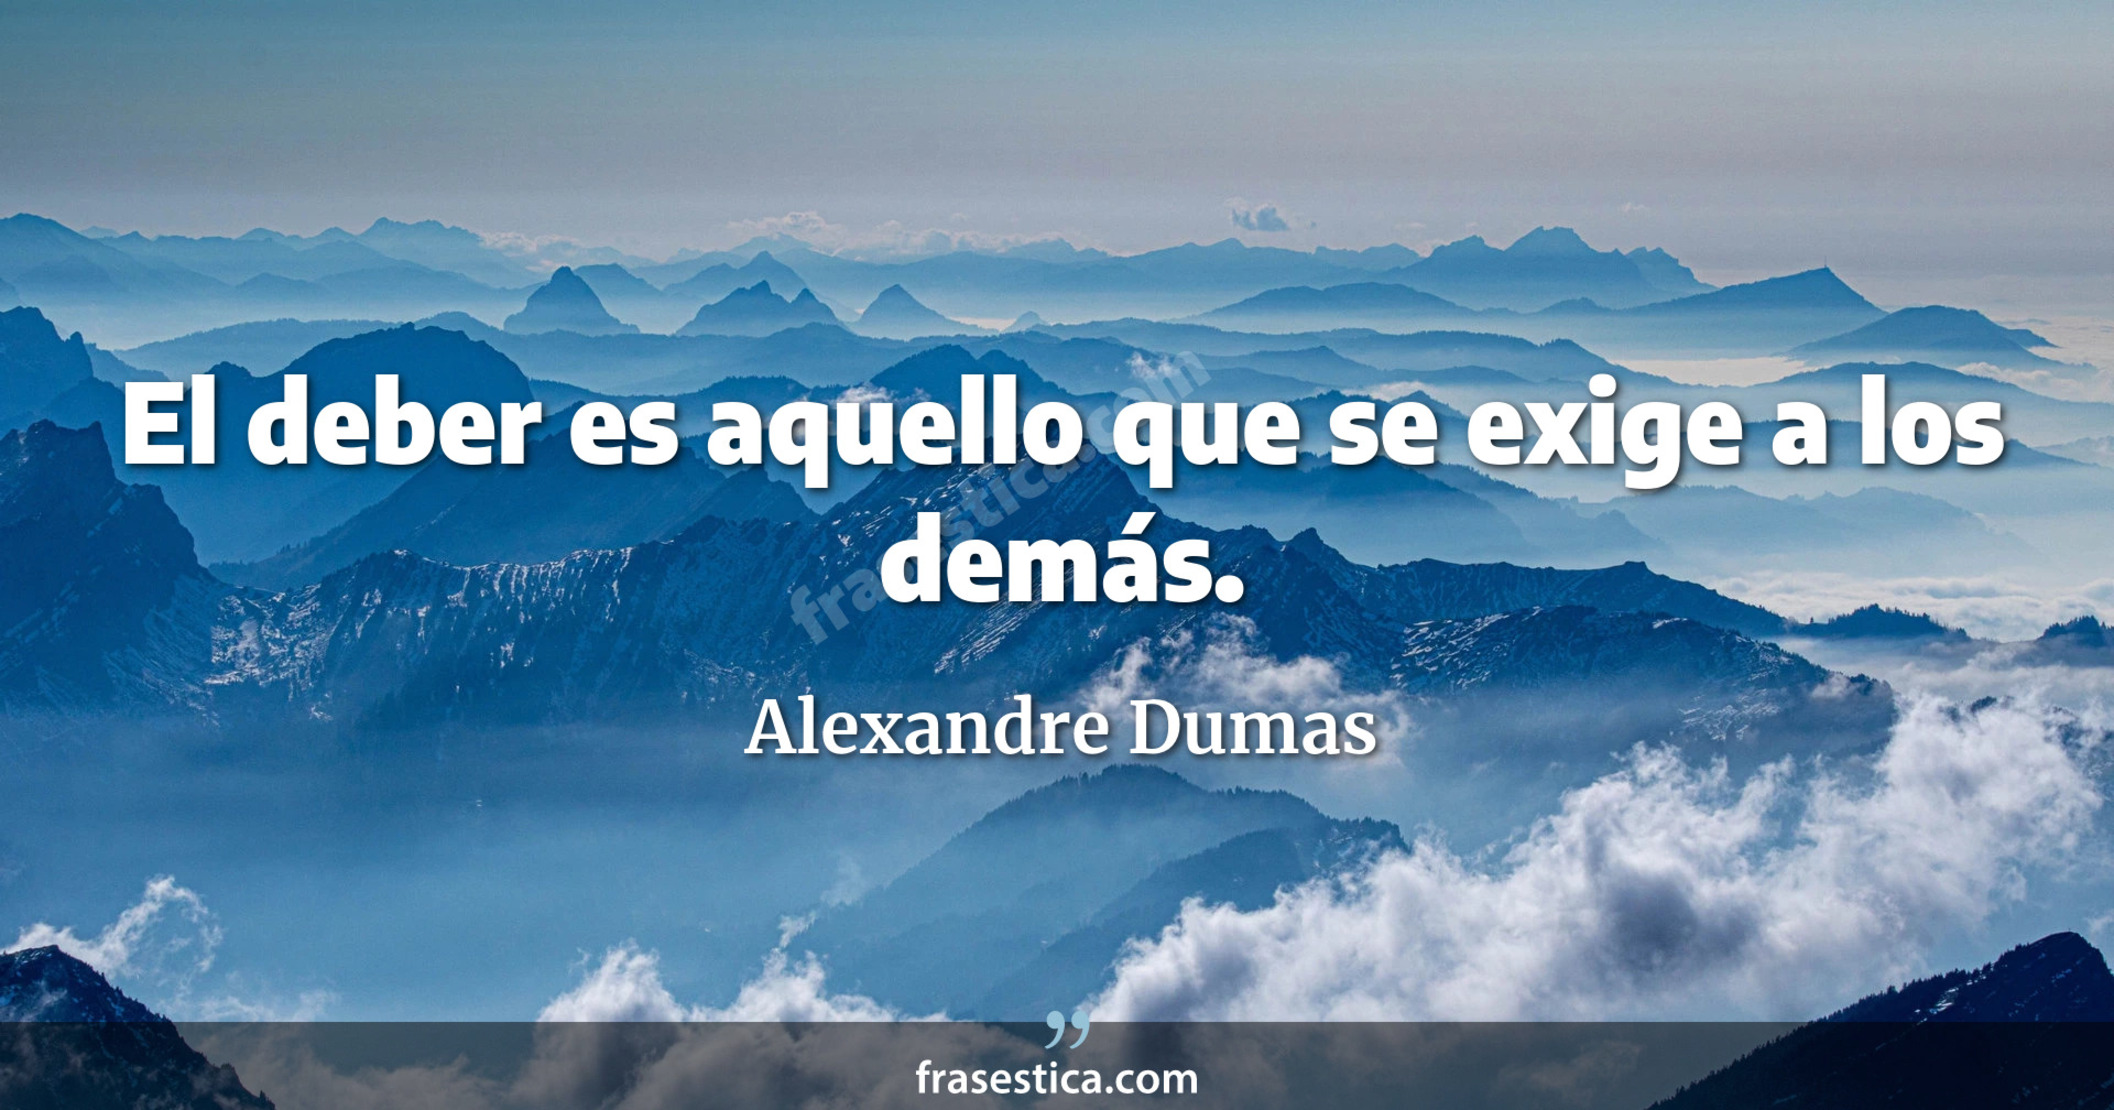 El deber es aquello que se exige a los demás. - Alexandre Dumas